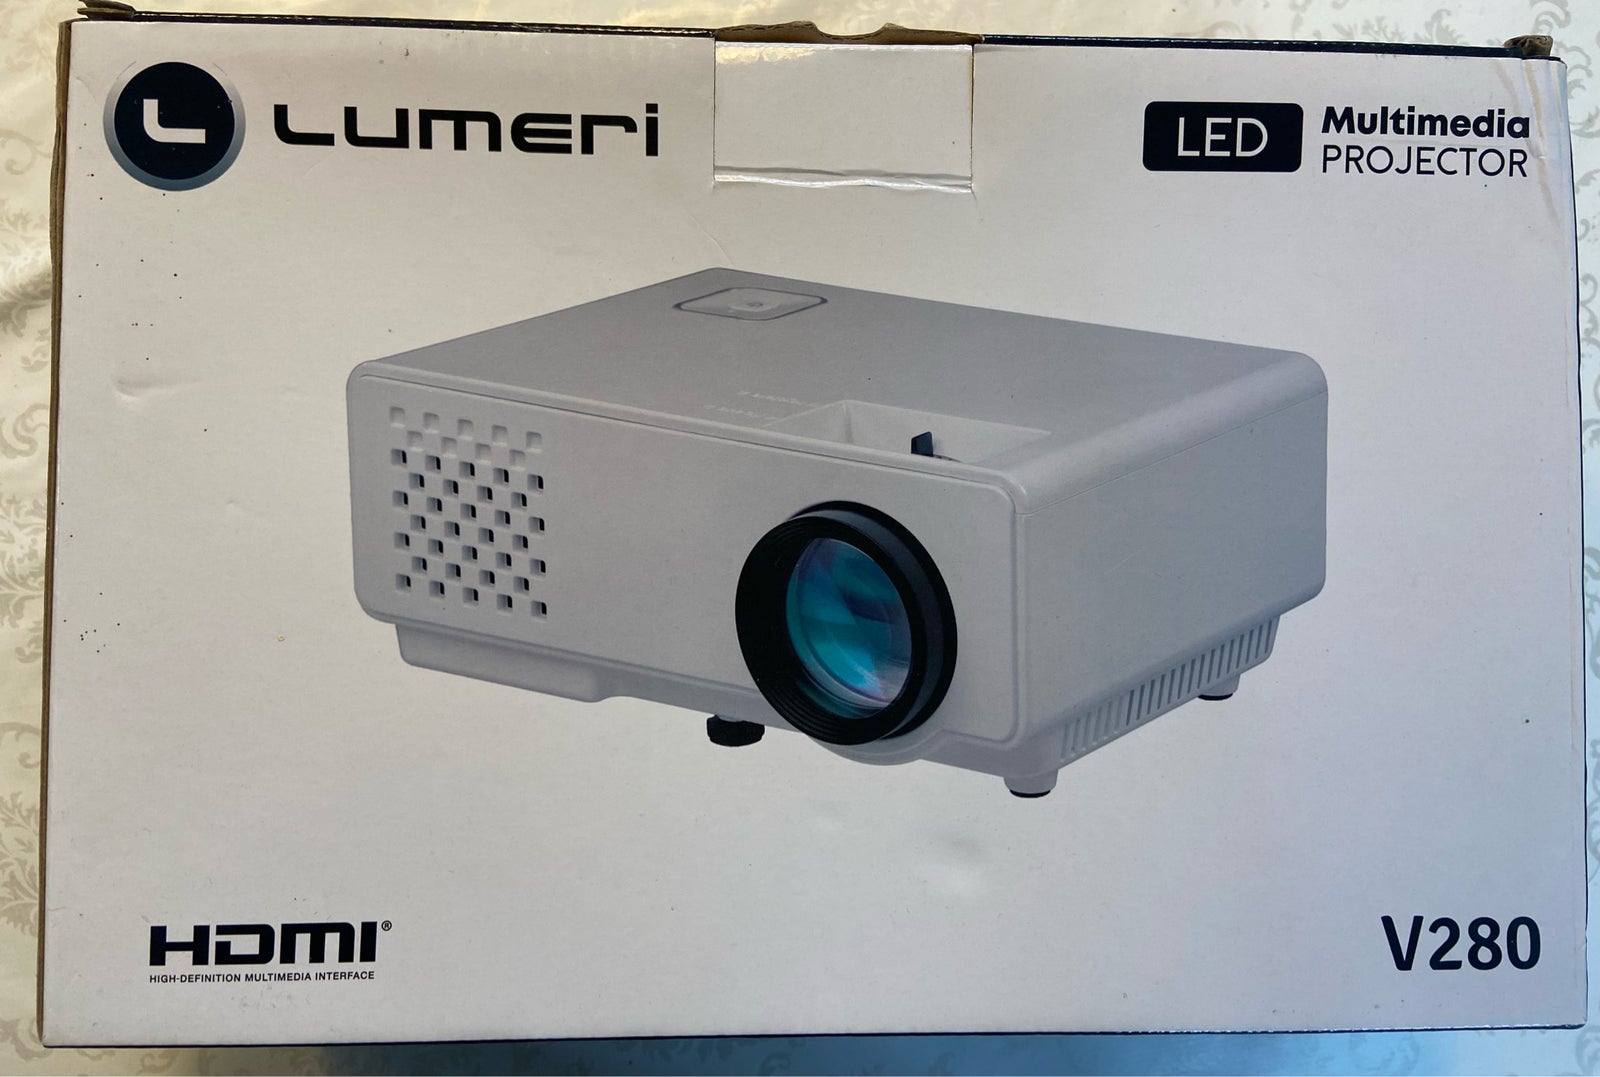 Projektor, Lumeri, V280